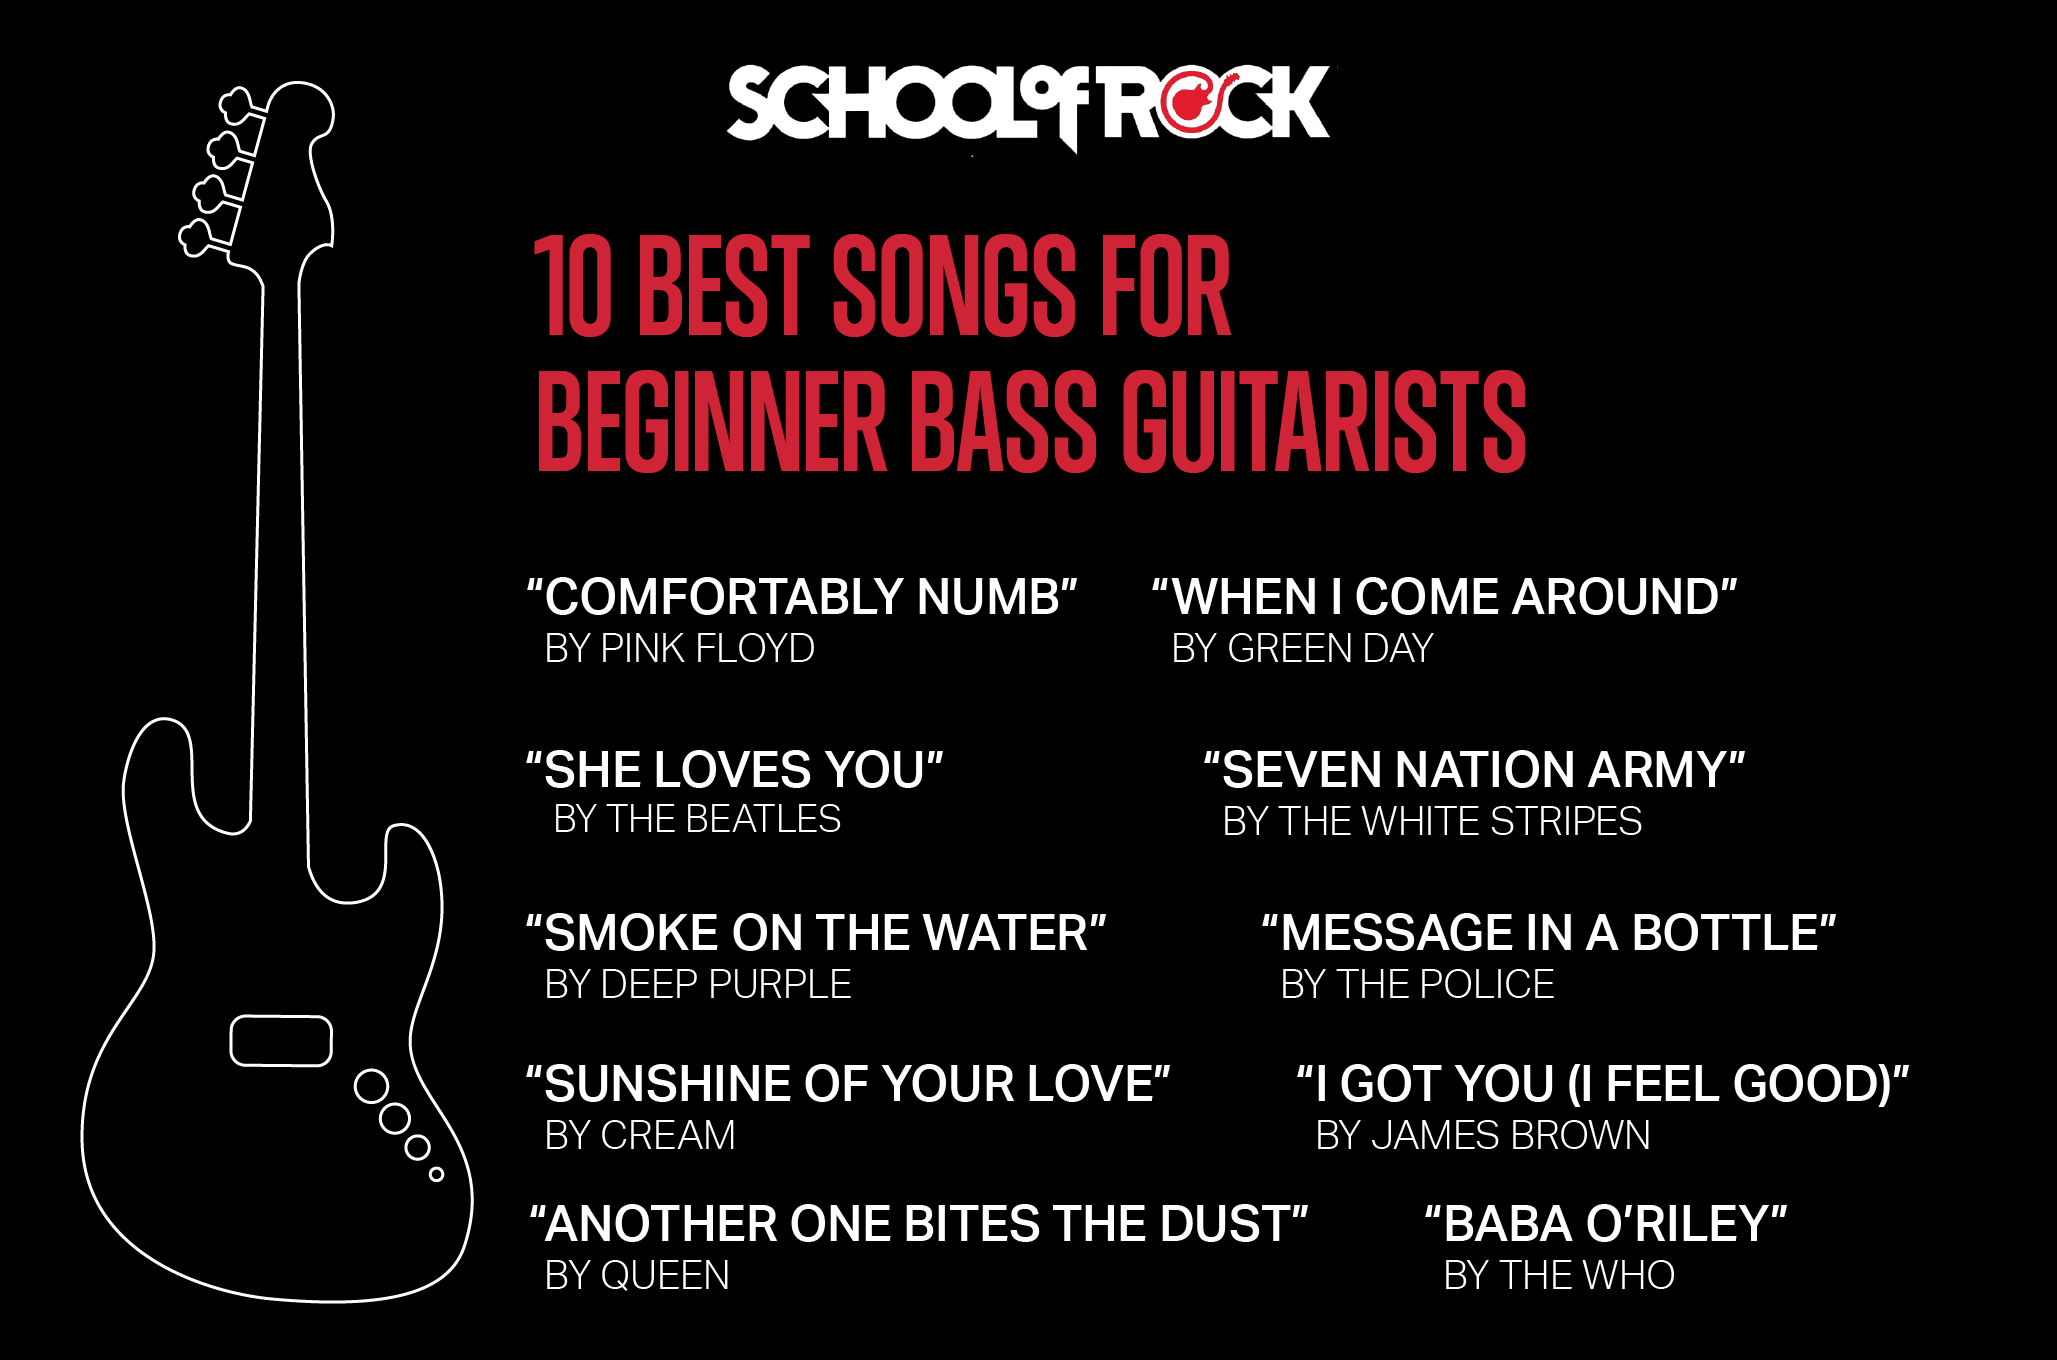 10 Best Songs for Beginner Bass Guitarists